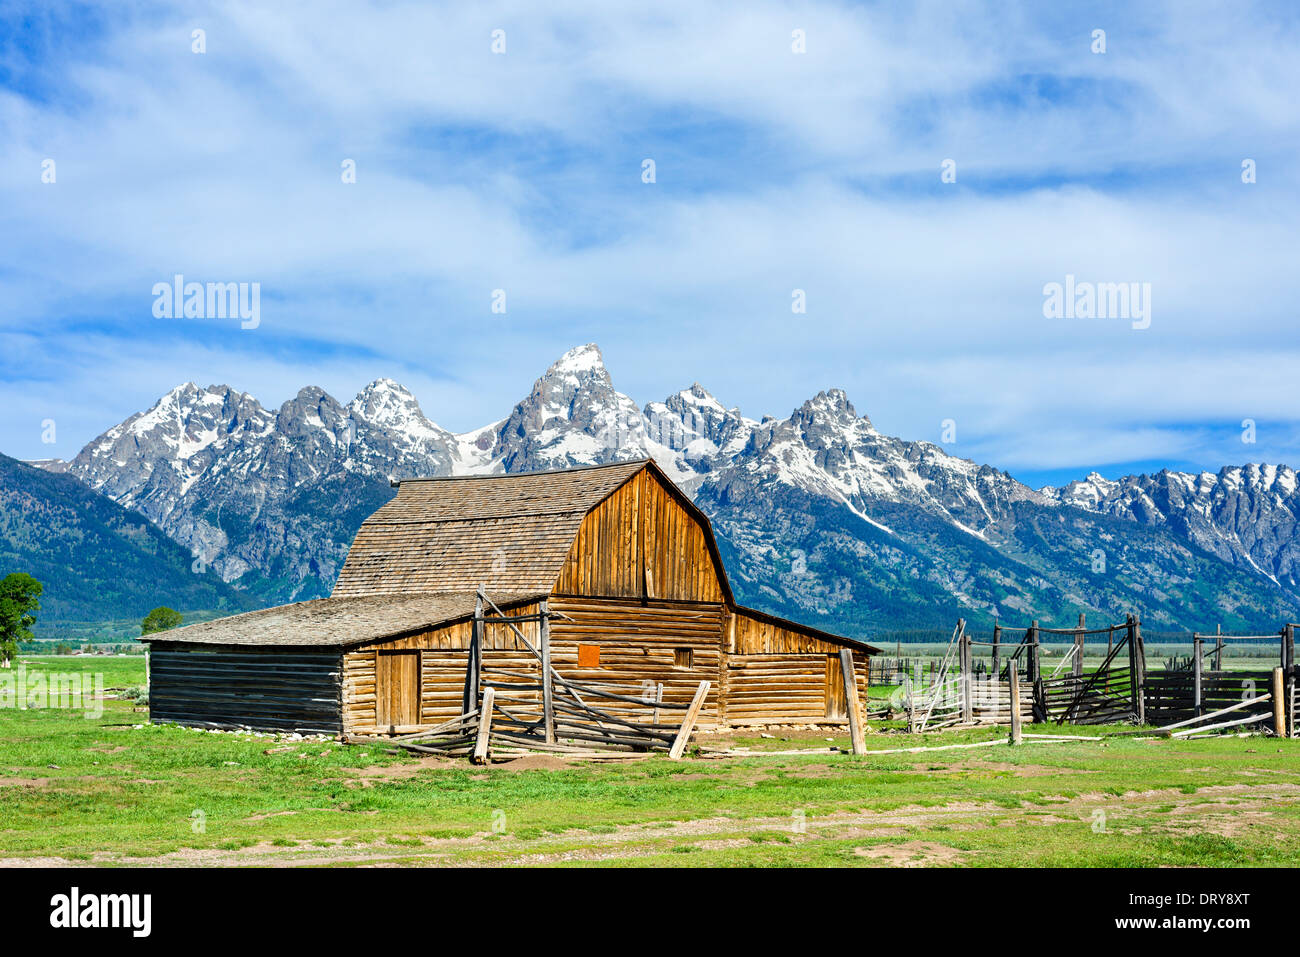 Scheune auf einem alten Bauernhof auf historischen Mormone Zeile, Grand-Teton-Nationalpark, Jackson Hole Valley, Wyoming, USA Stockfoto